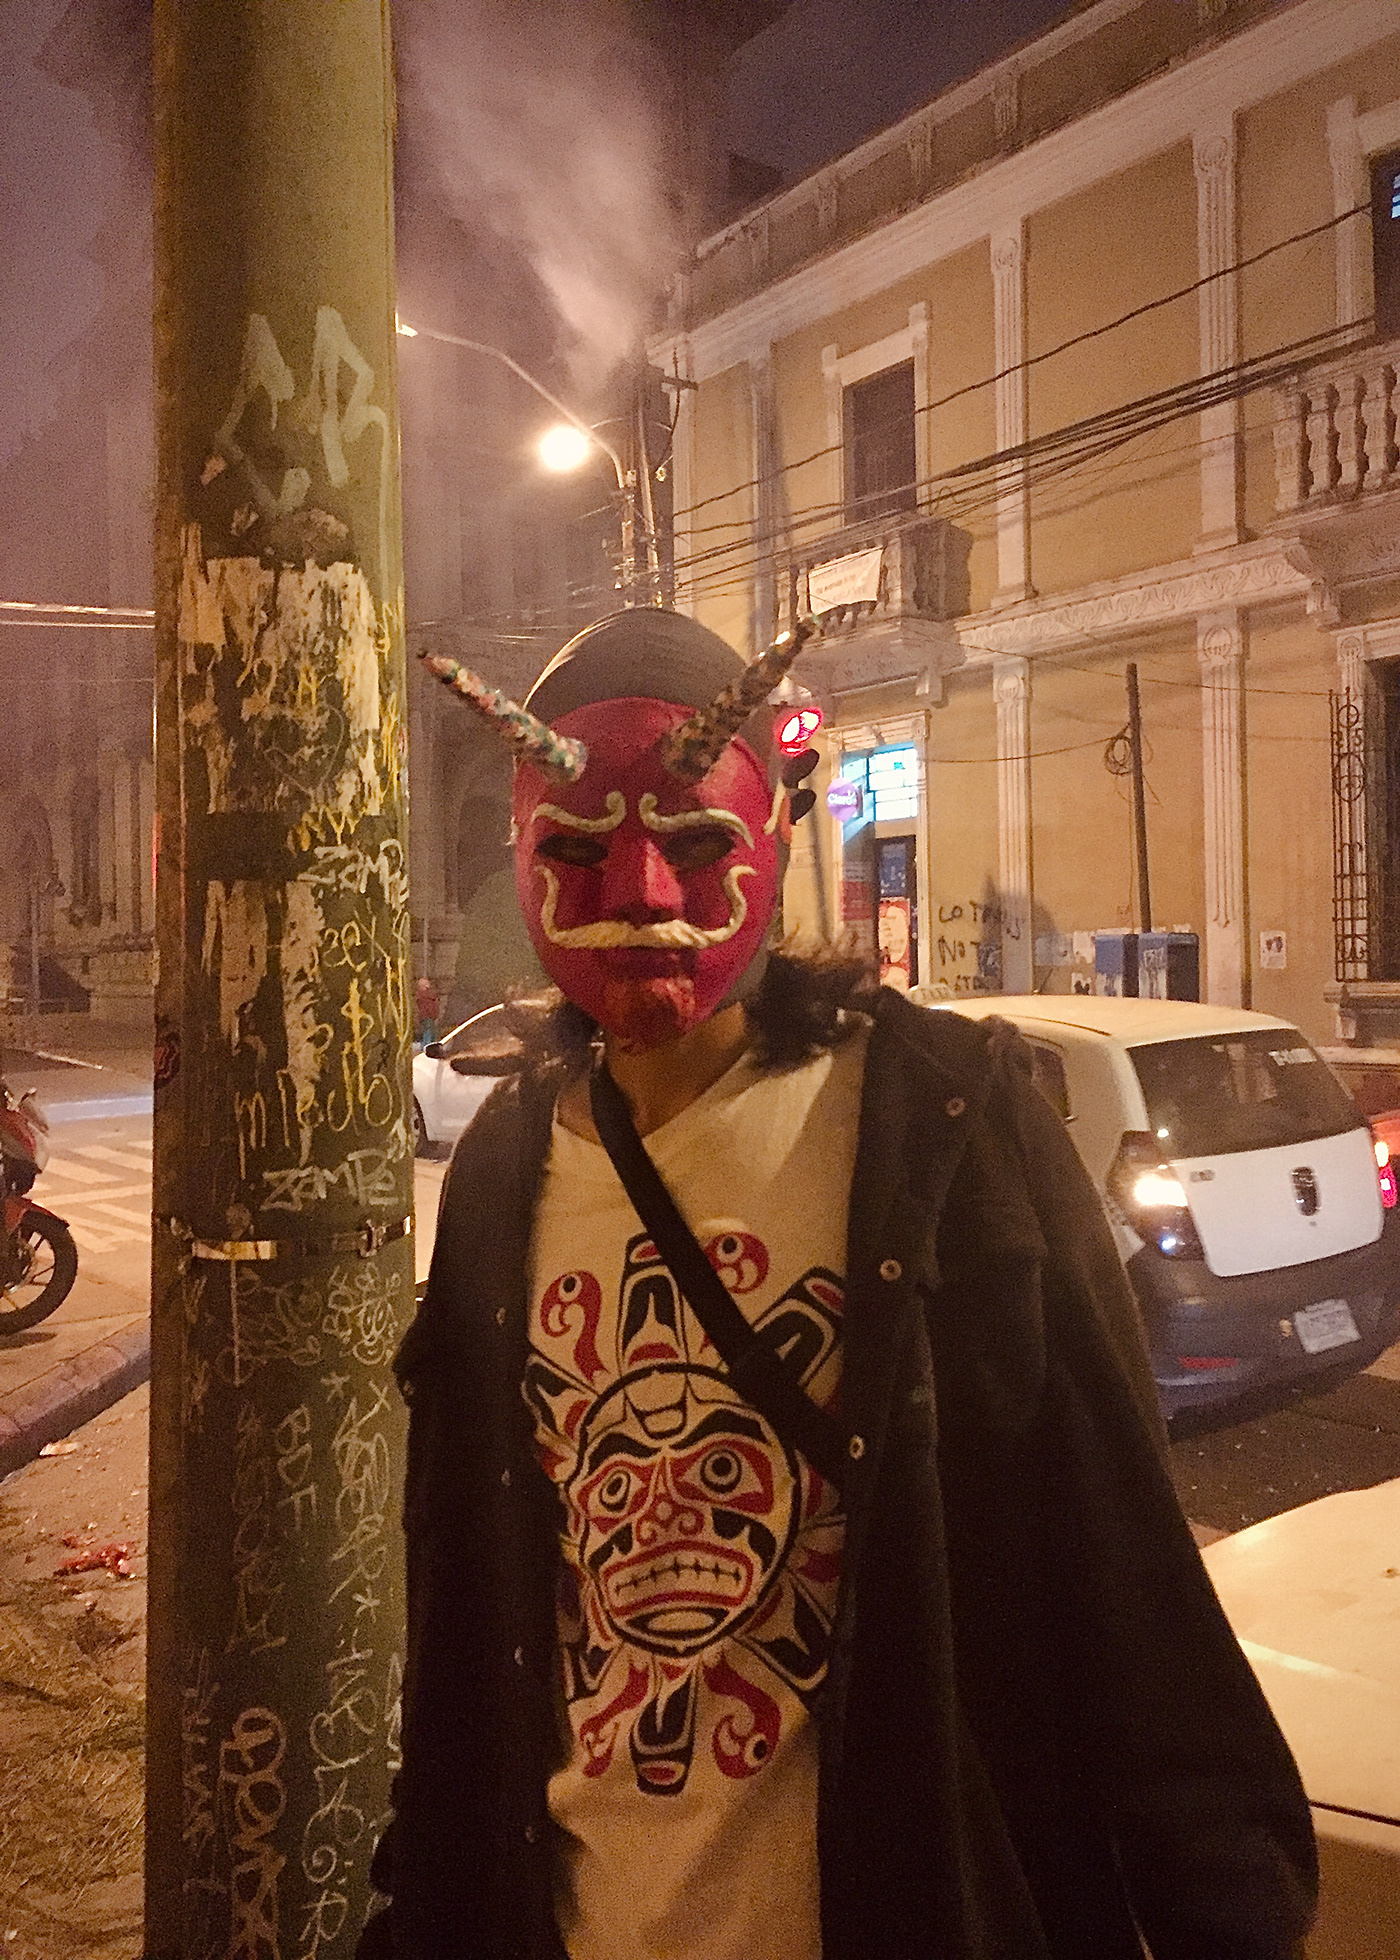 zampe molotov concierto mask diablo Guatemala mexico Dominicano lucha libre zampe Art Performance